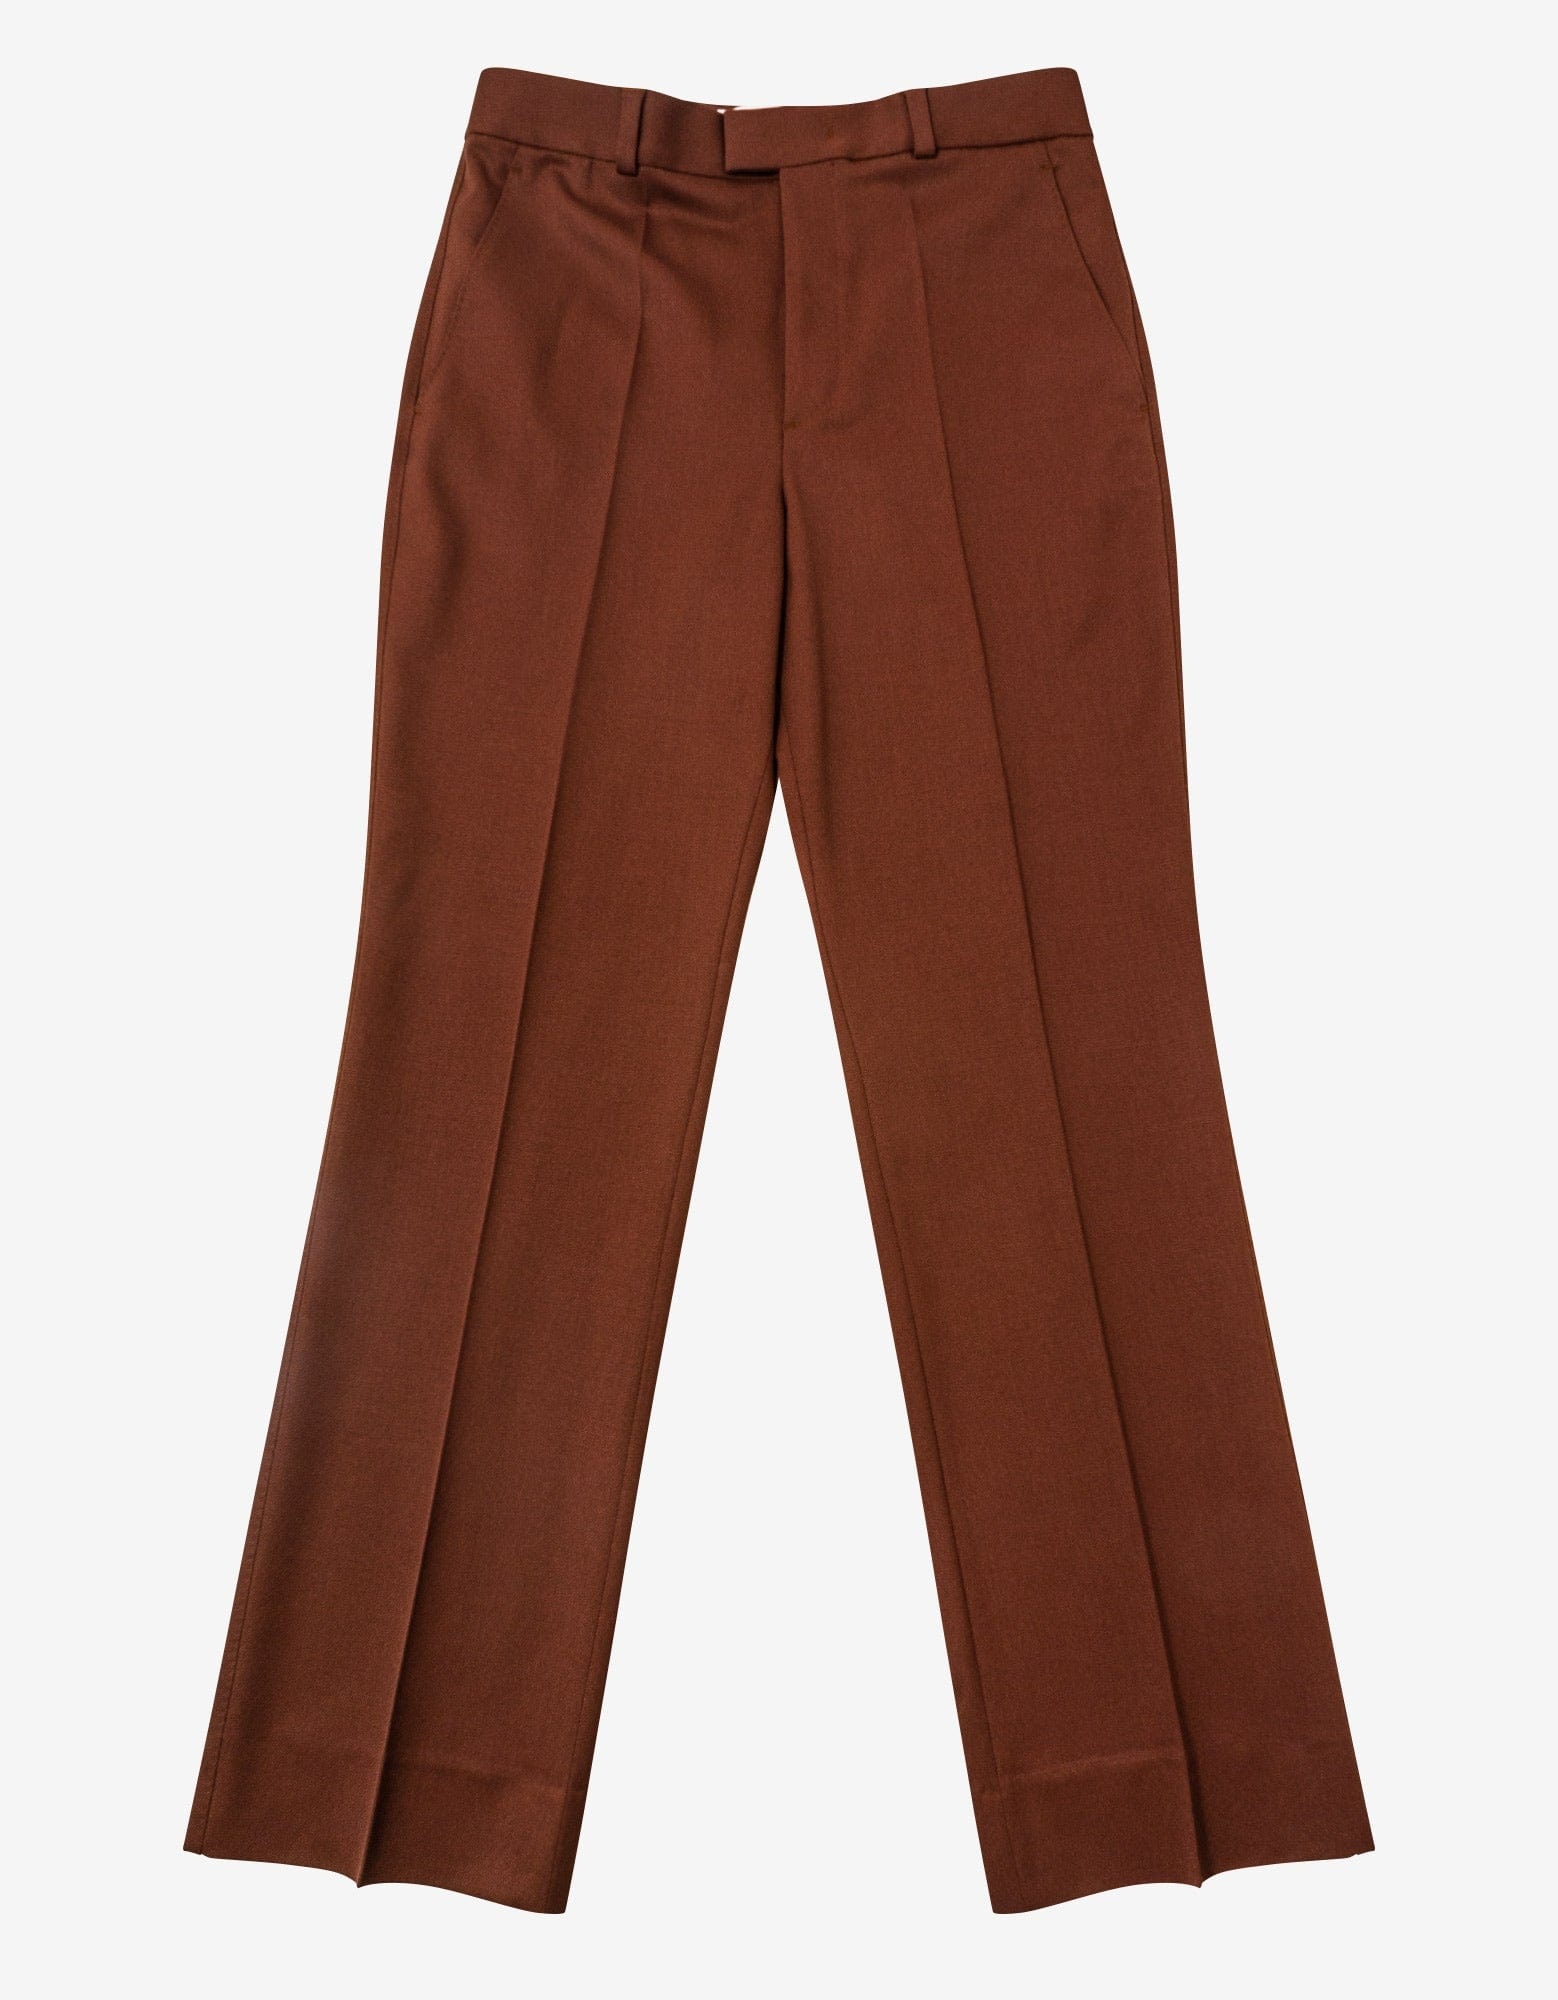 Brown Wool Trousers - 1